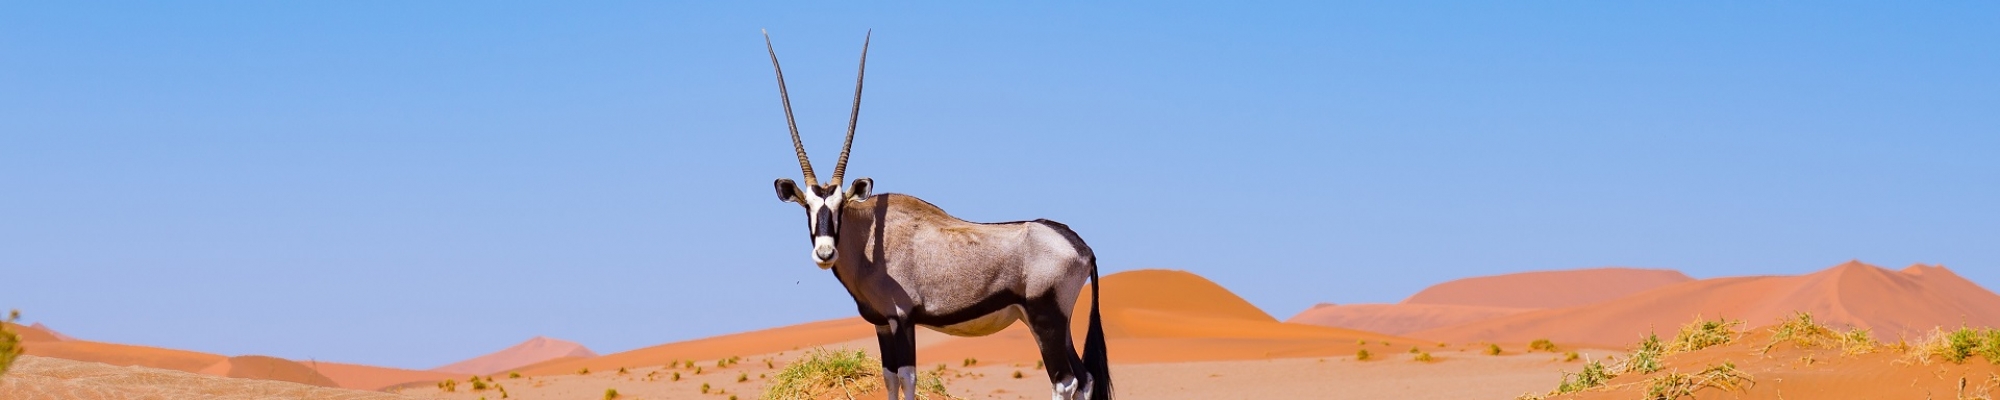 Safari Namibie - Un oryx dans le désert du Namib